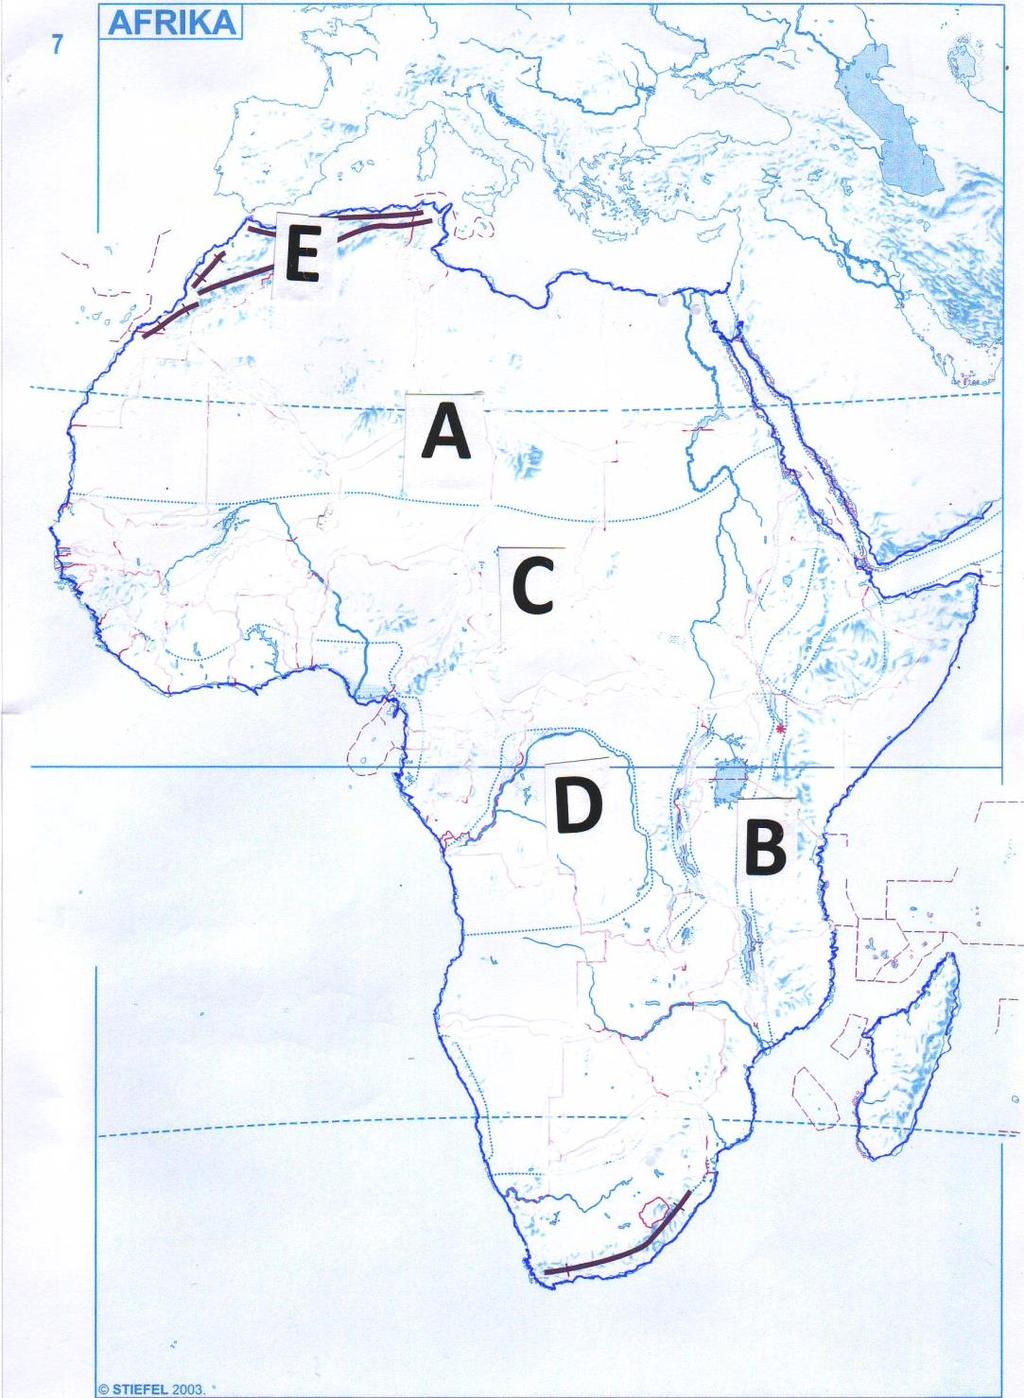 10 RAJZOS FELADAT AFRIKA TÁJAI ÚTMUTATÓ: Tanulmányozd a térképvázlatot, majd válaszolj a kérdésekre!